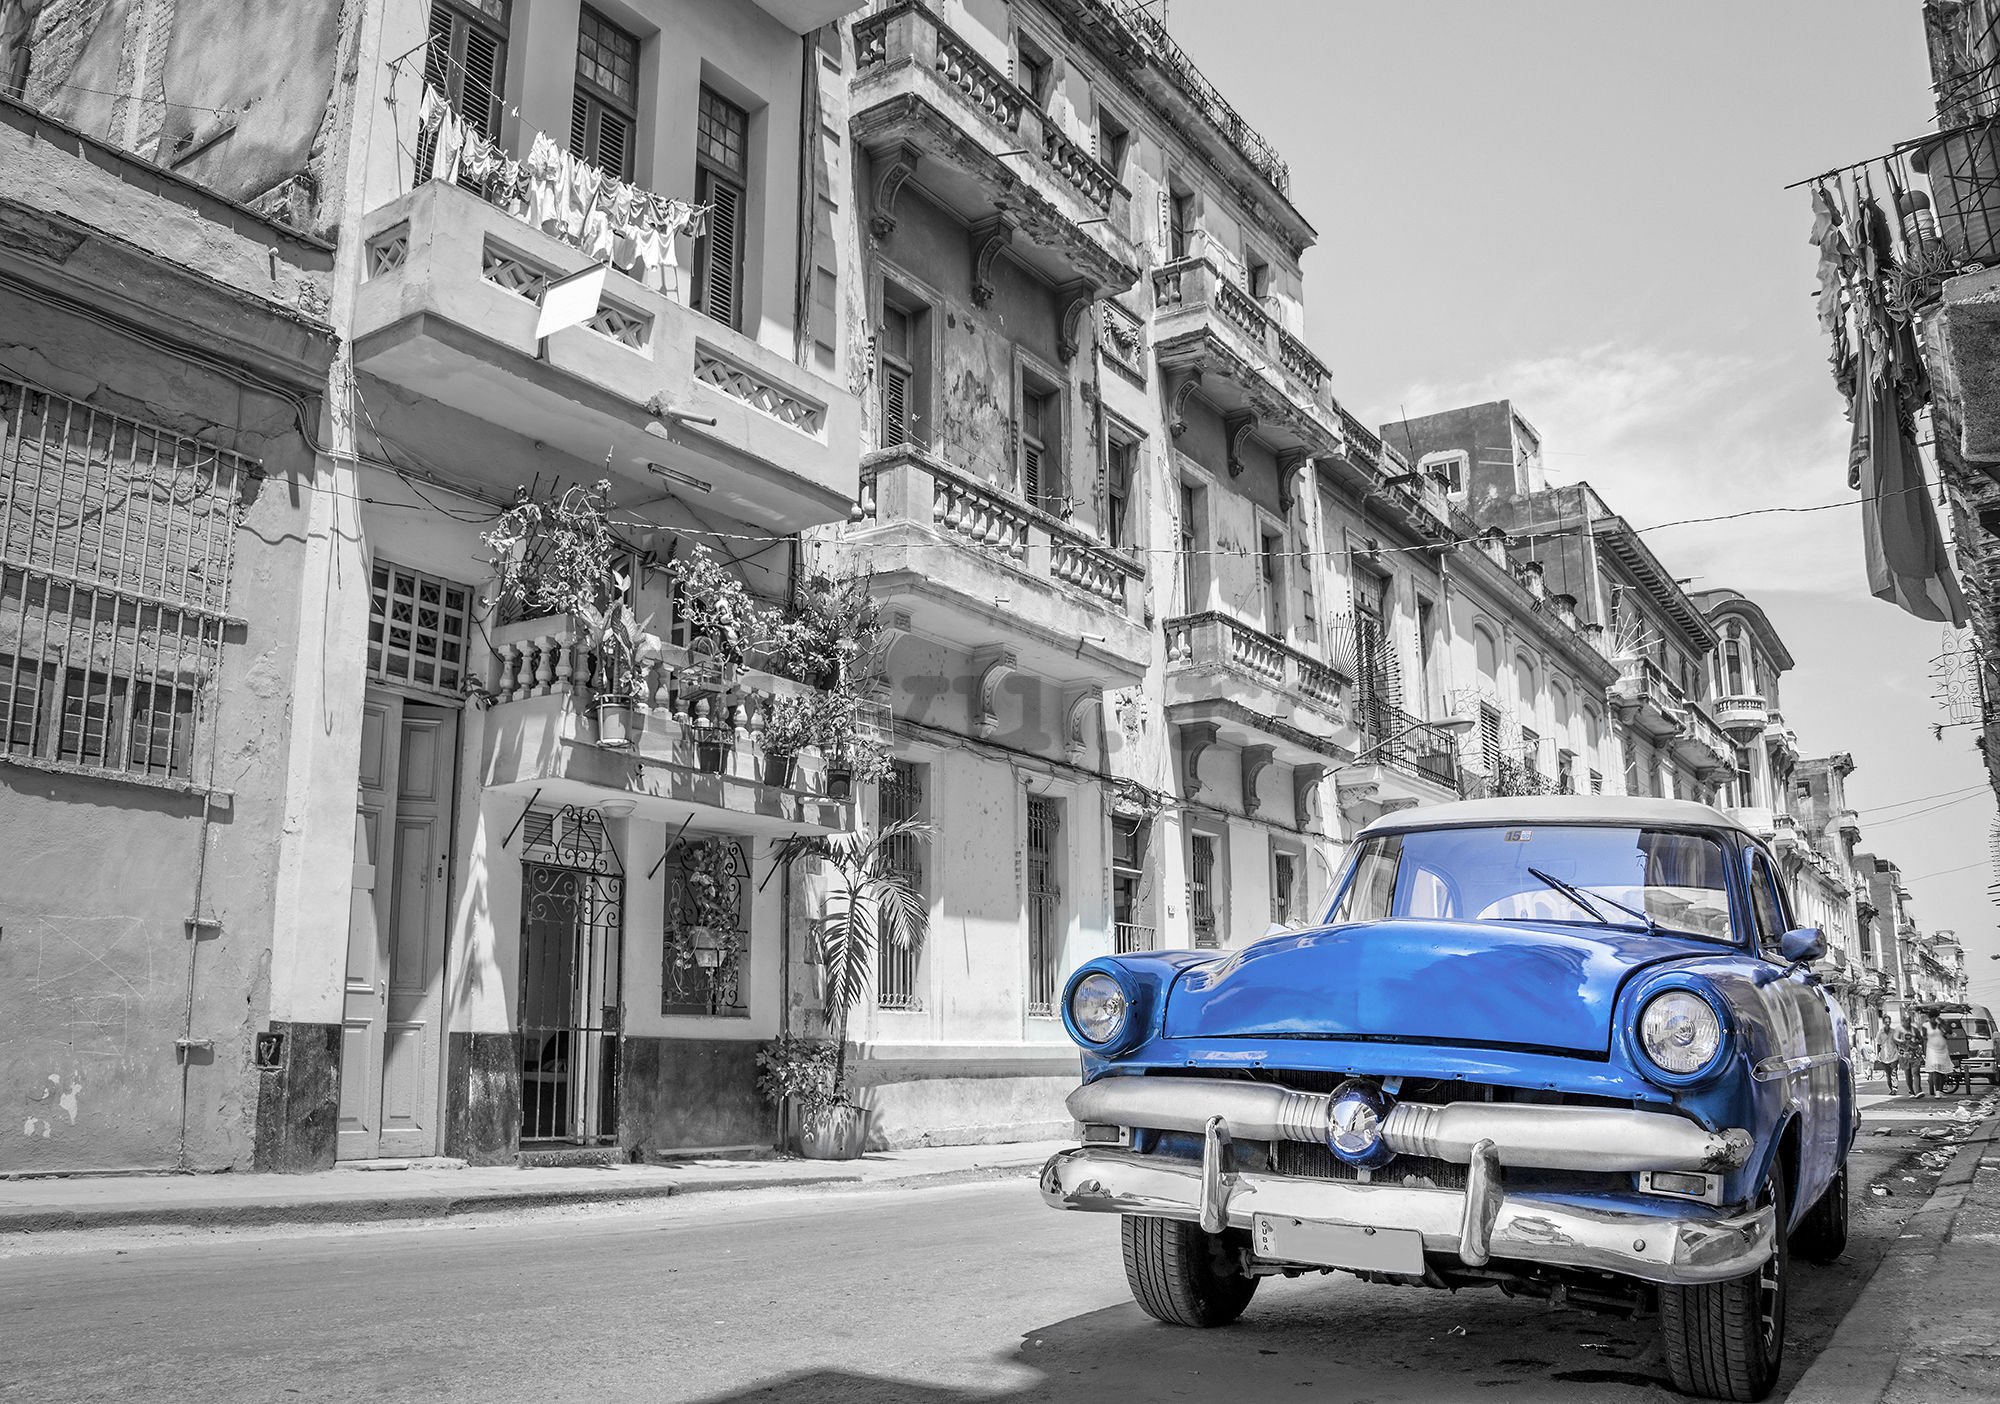 Fototapet: Mașină albastră Havana - 184x254 cm